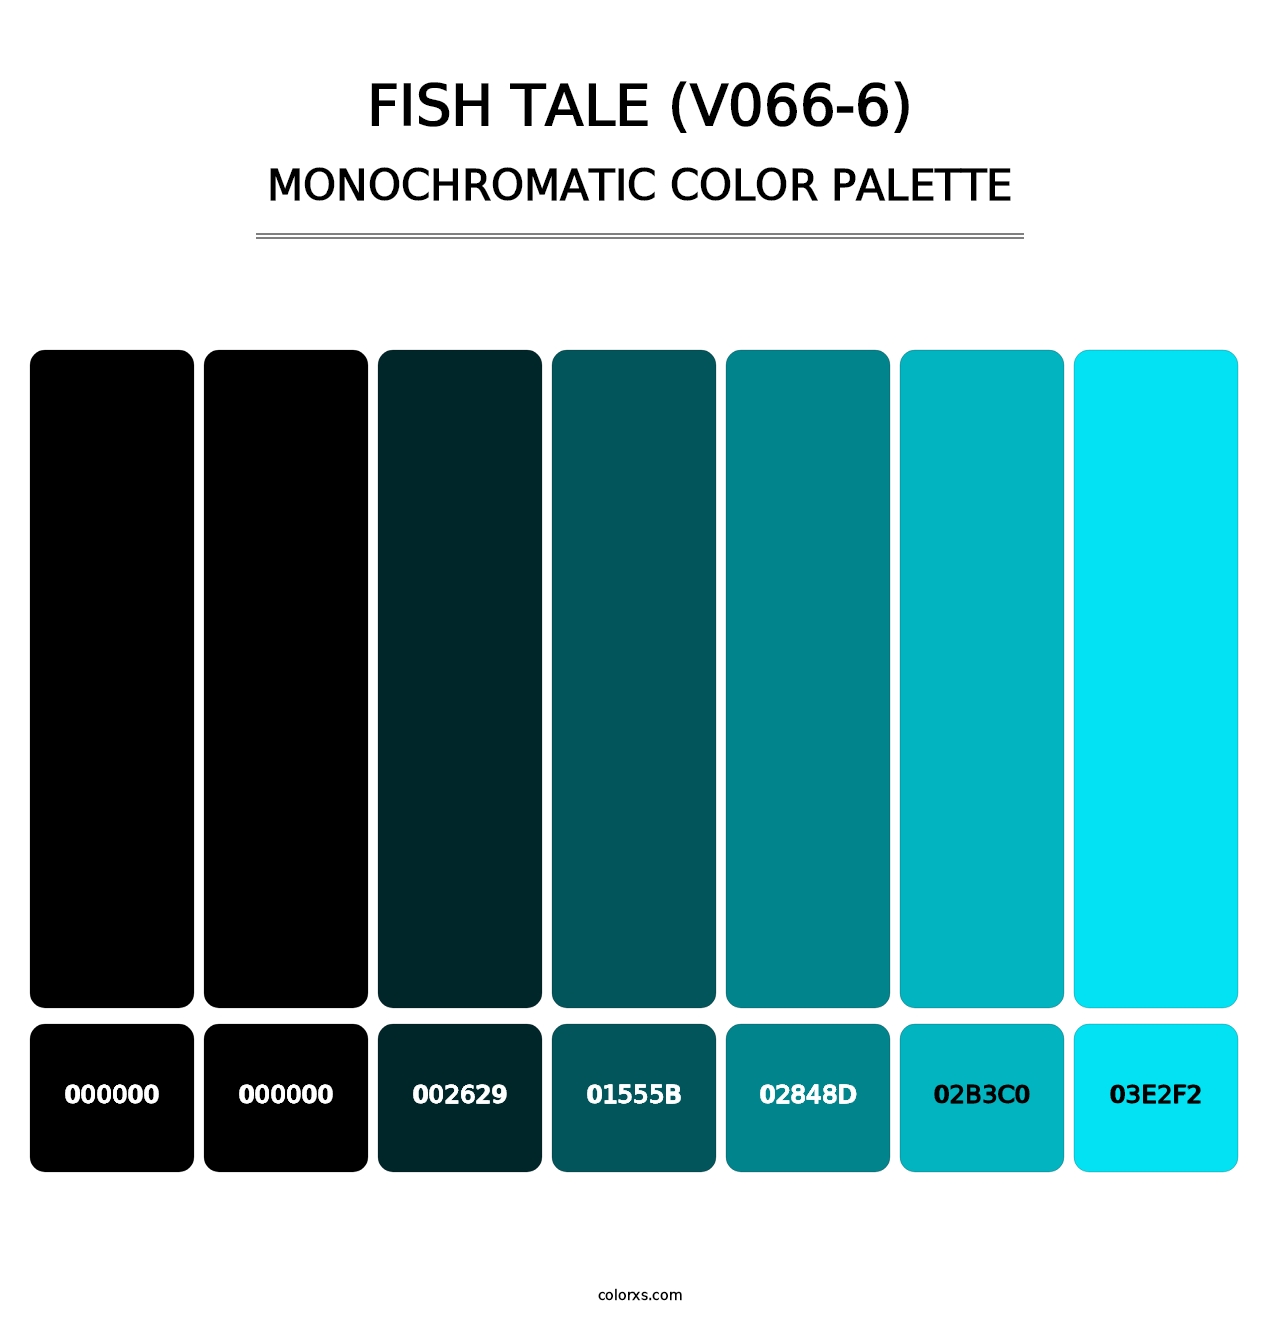 Fish Tale (V066-6) - Monochromatic Color Palette